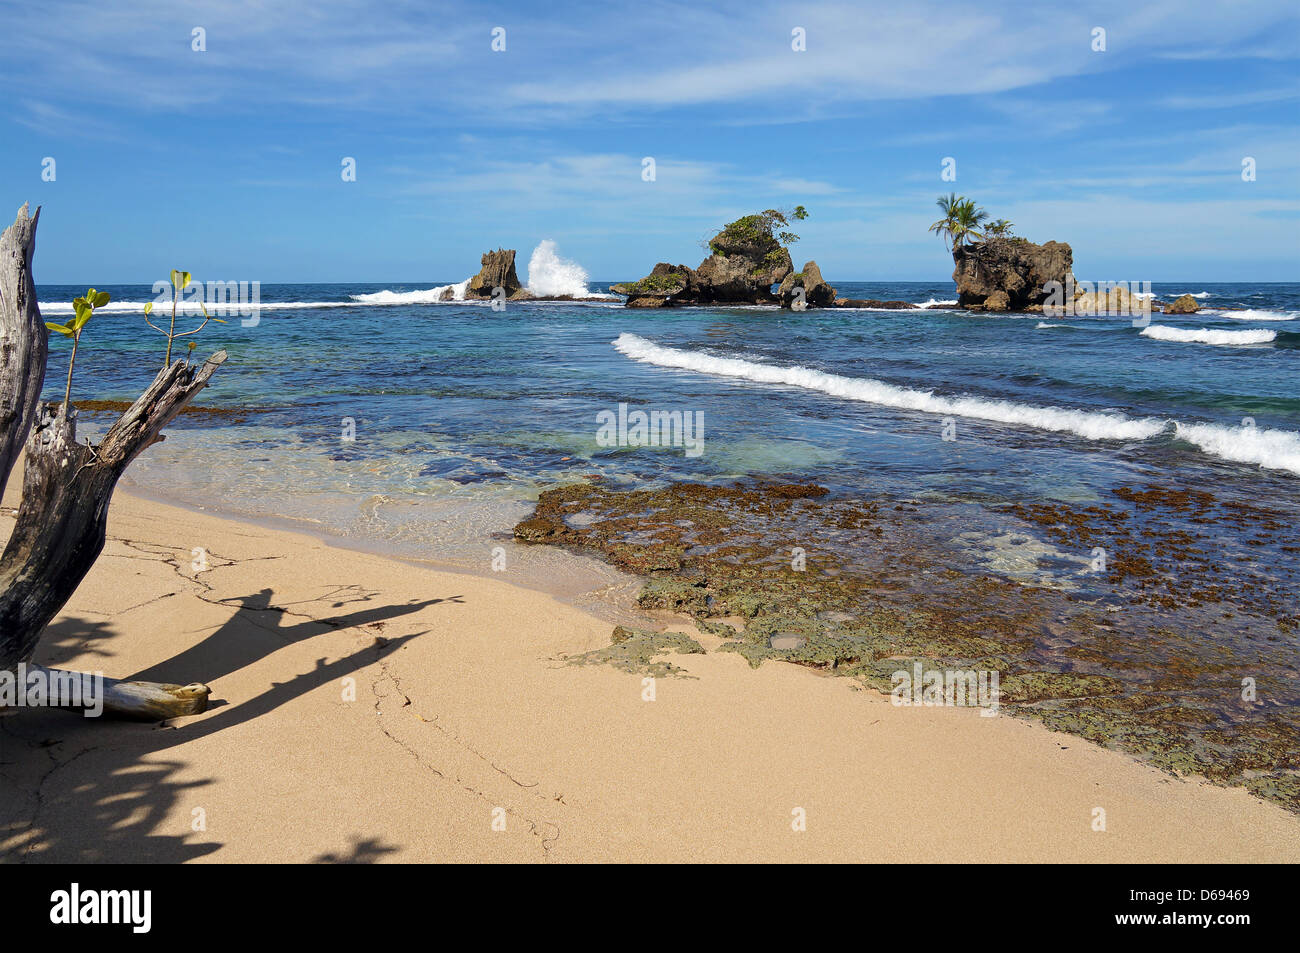 Tropischer Strand mit Welle stürzt auf felsigen Inseln, Karibik, Bocas del Toro, Panama Stockfoto